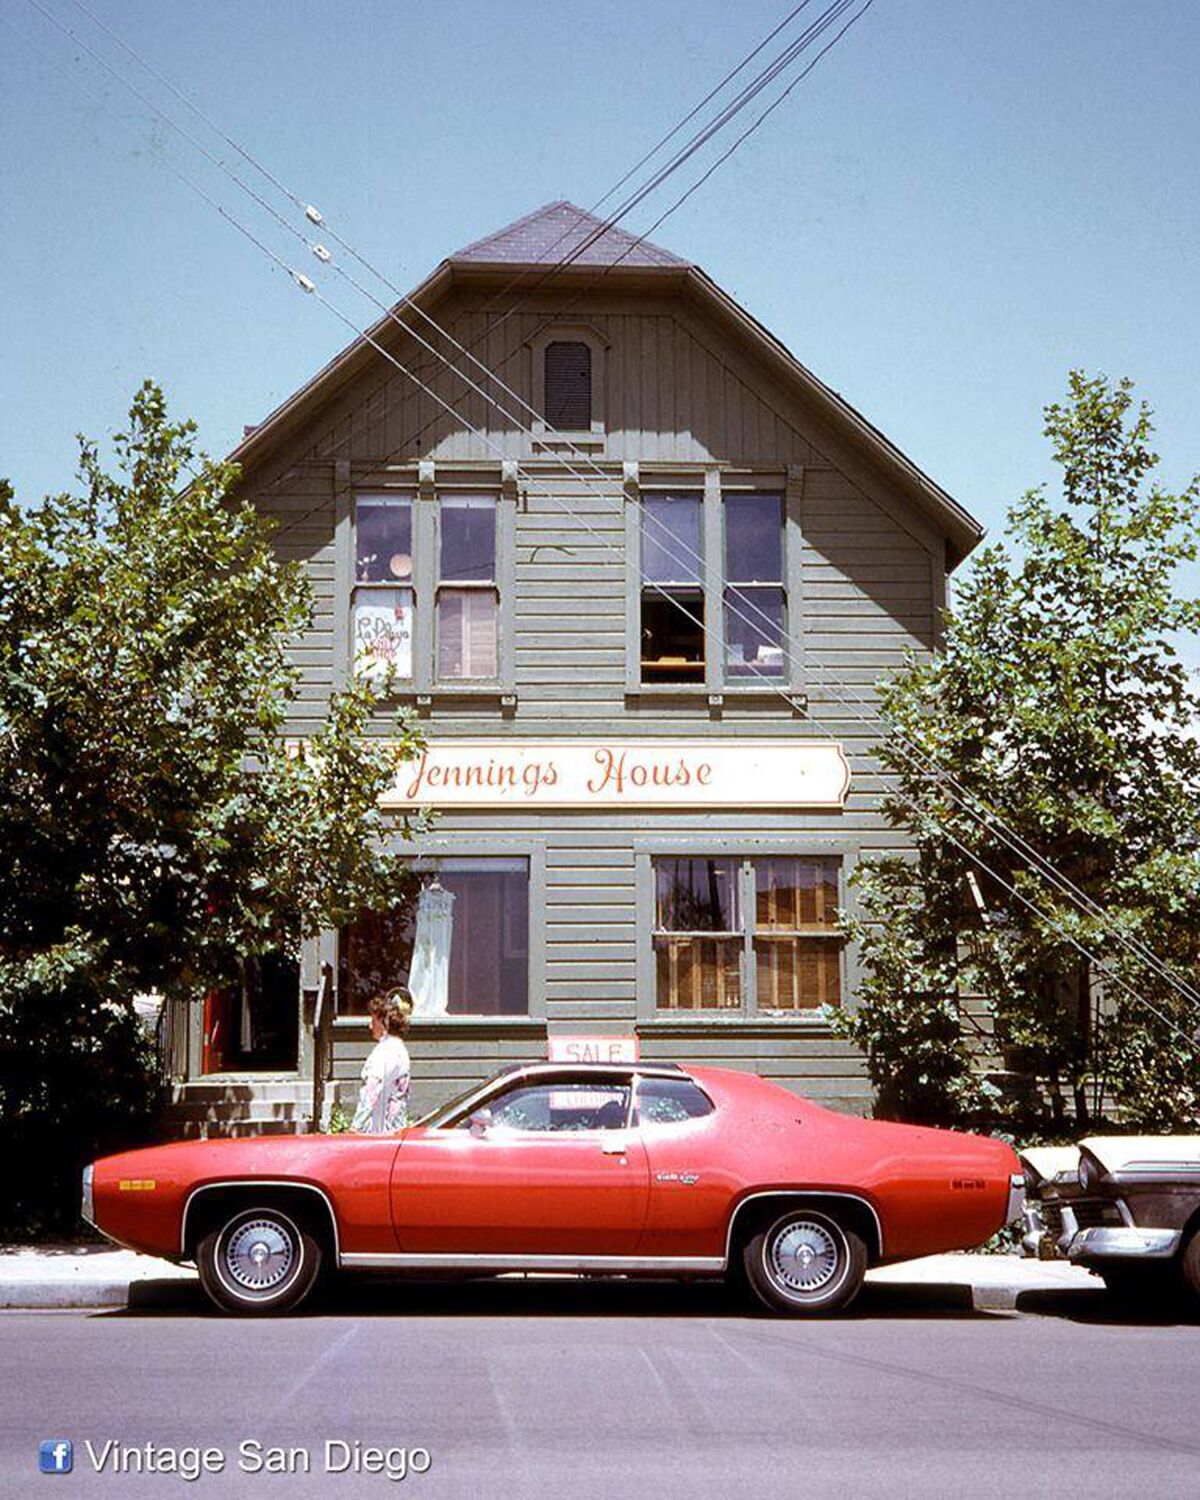 Frank Jennings' house in 1972.